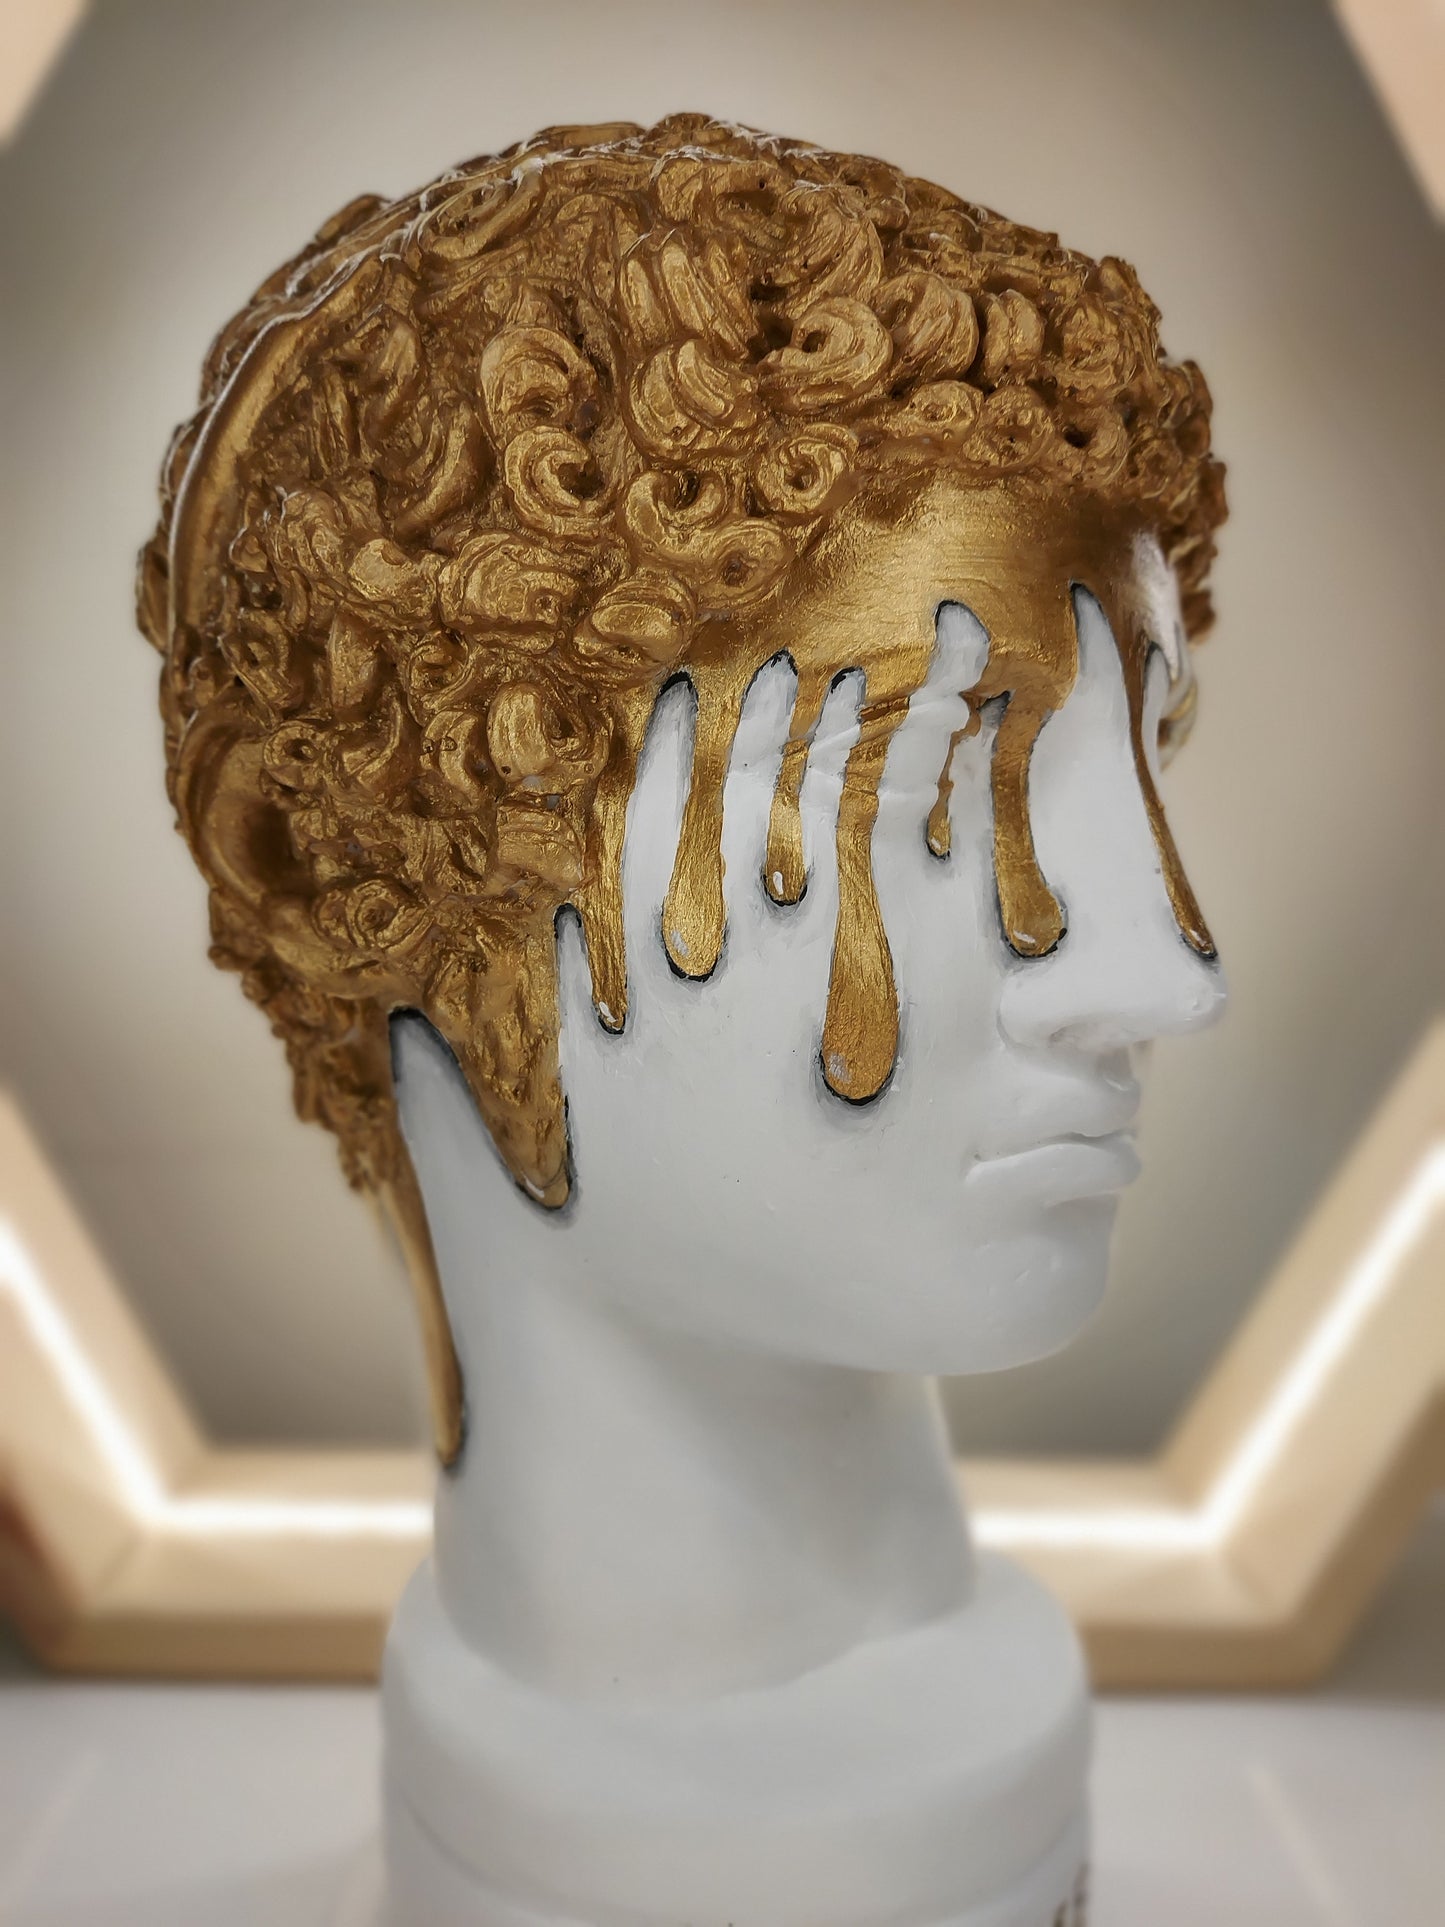 Hermes 'Melting Gold' Pop Art Sculpture, Modern Home Decor